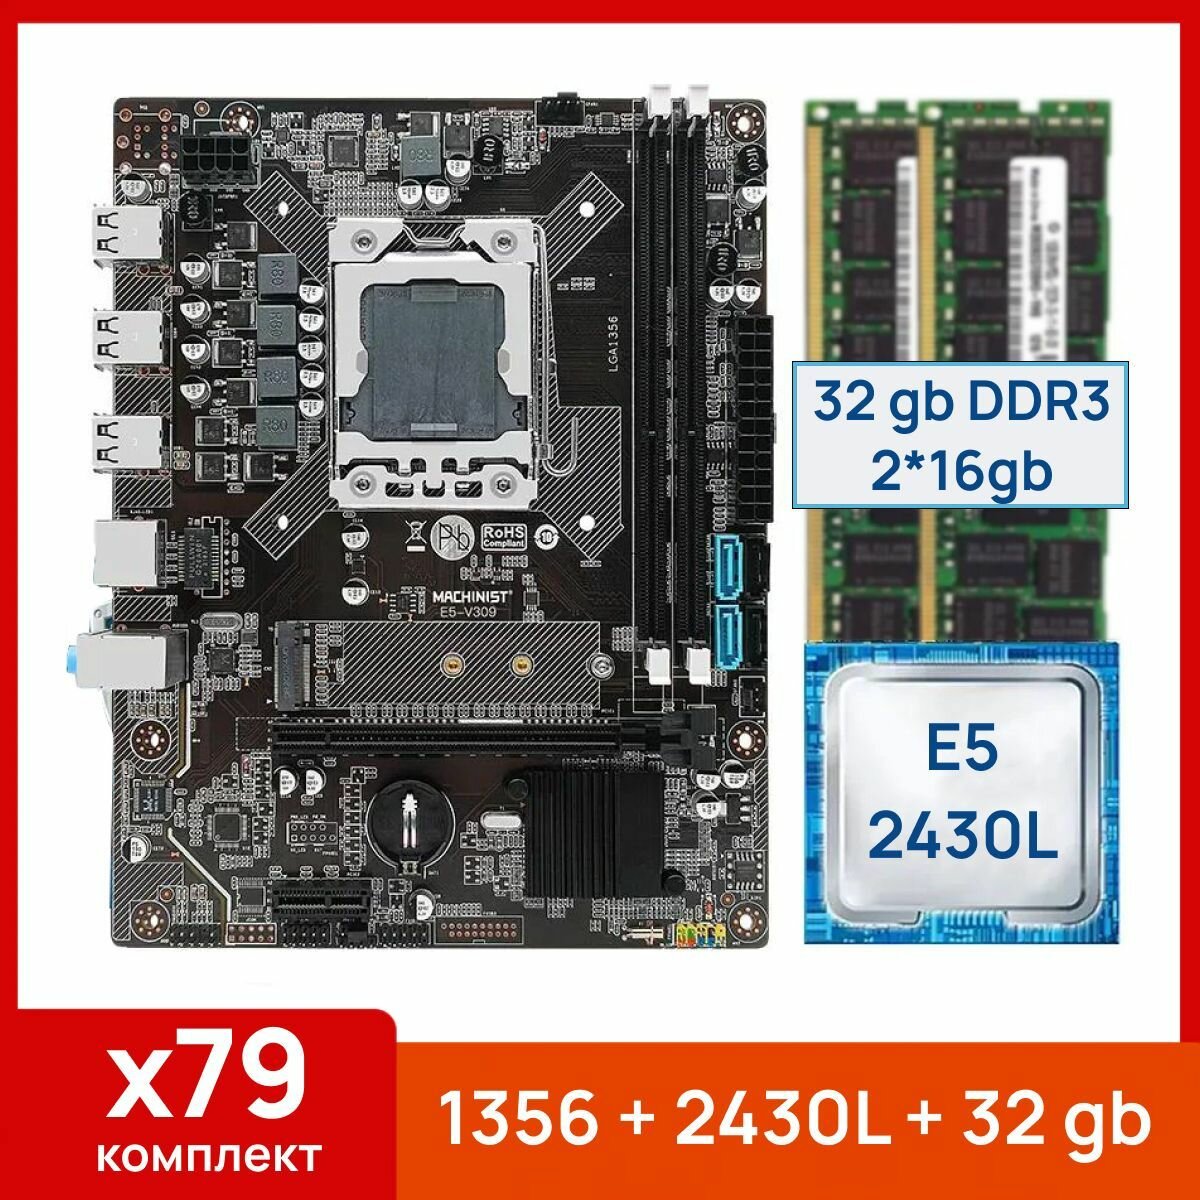 Комплект: Материнская плата Machinist 1356 + Процессор Xeon E5 2430L + 32 gb(2x16gb) DDR3 серверная